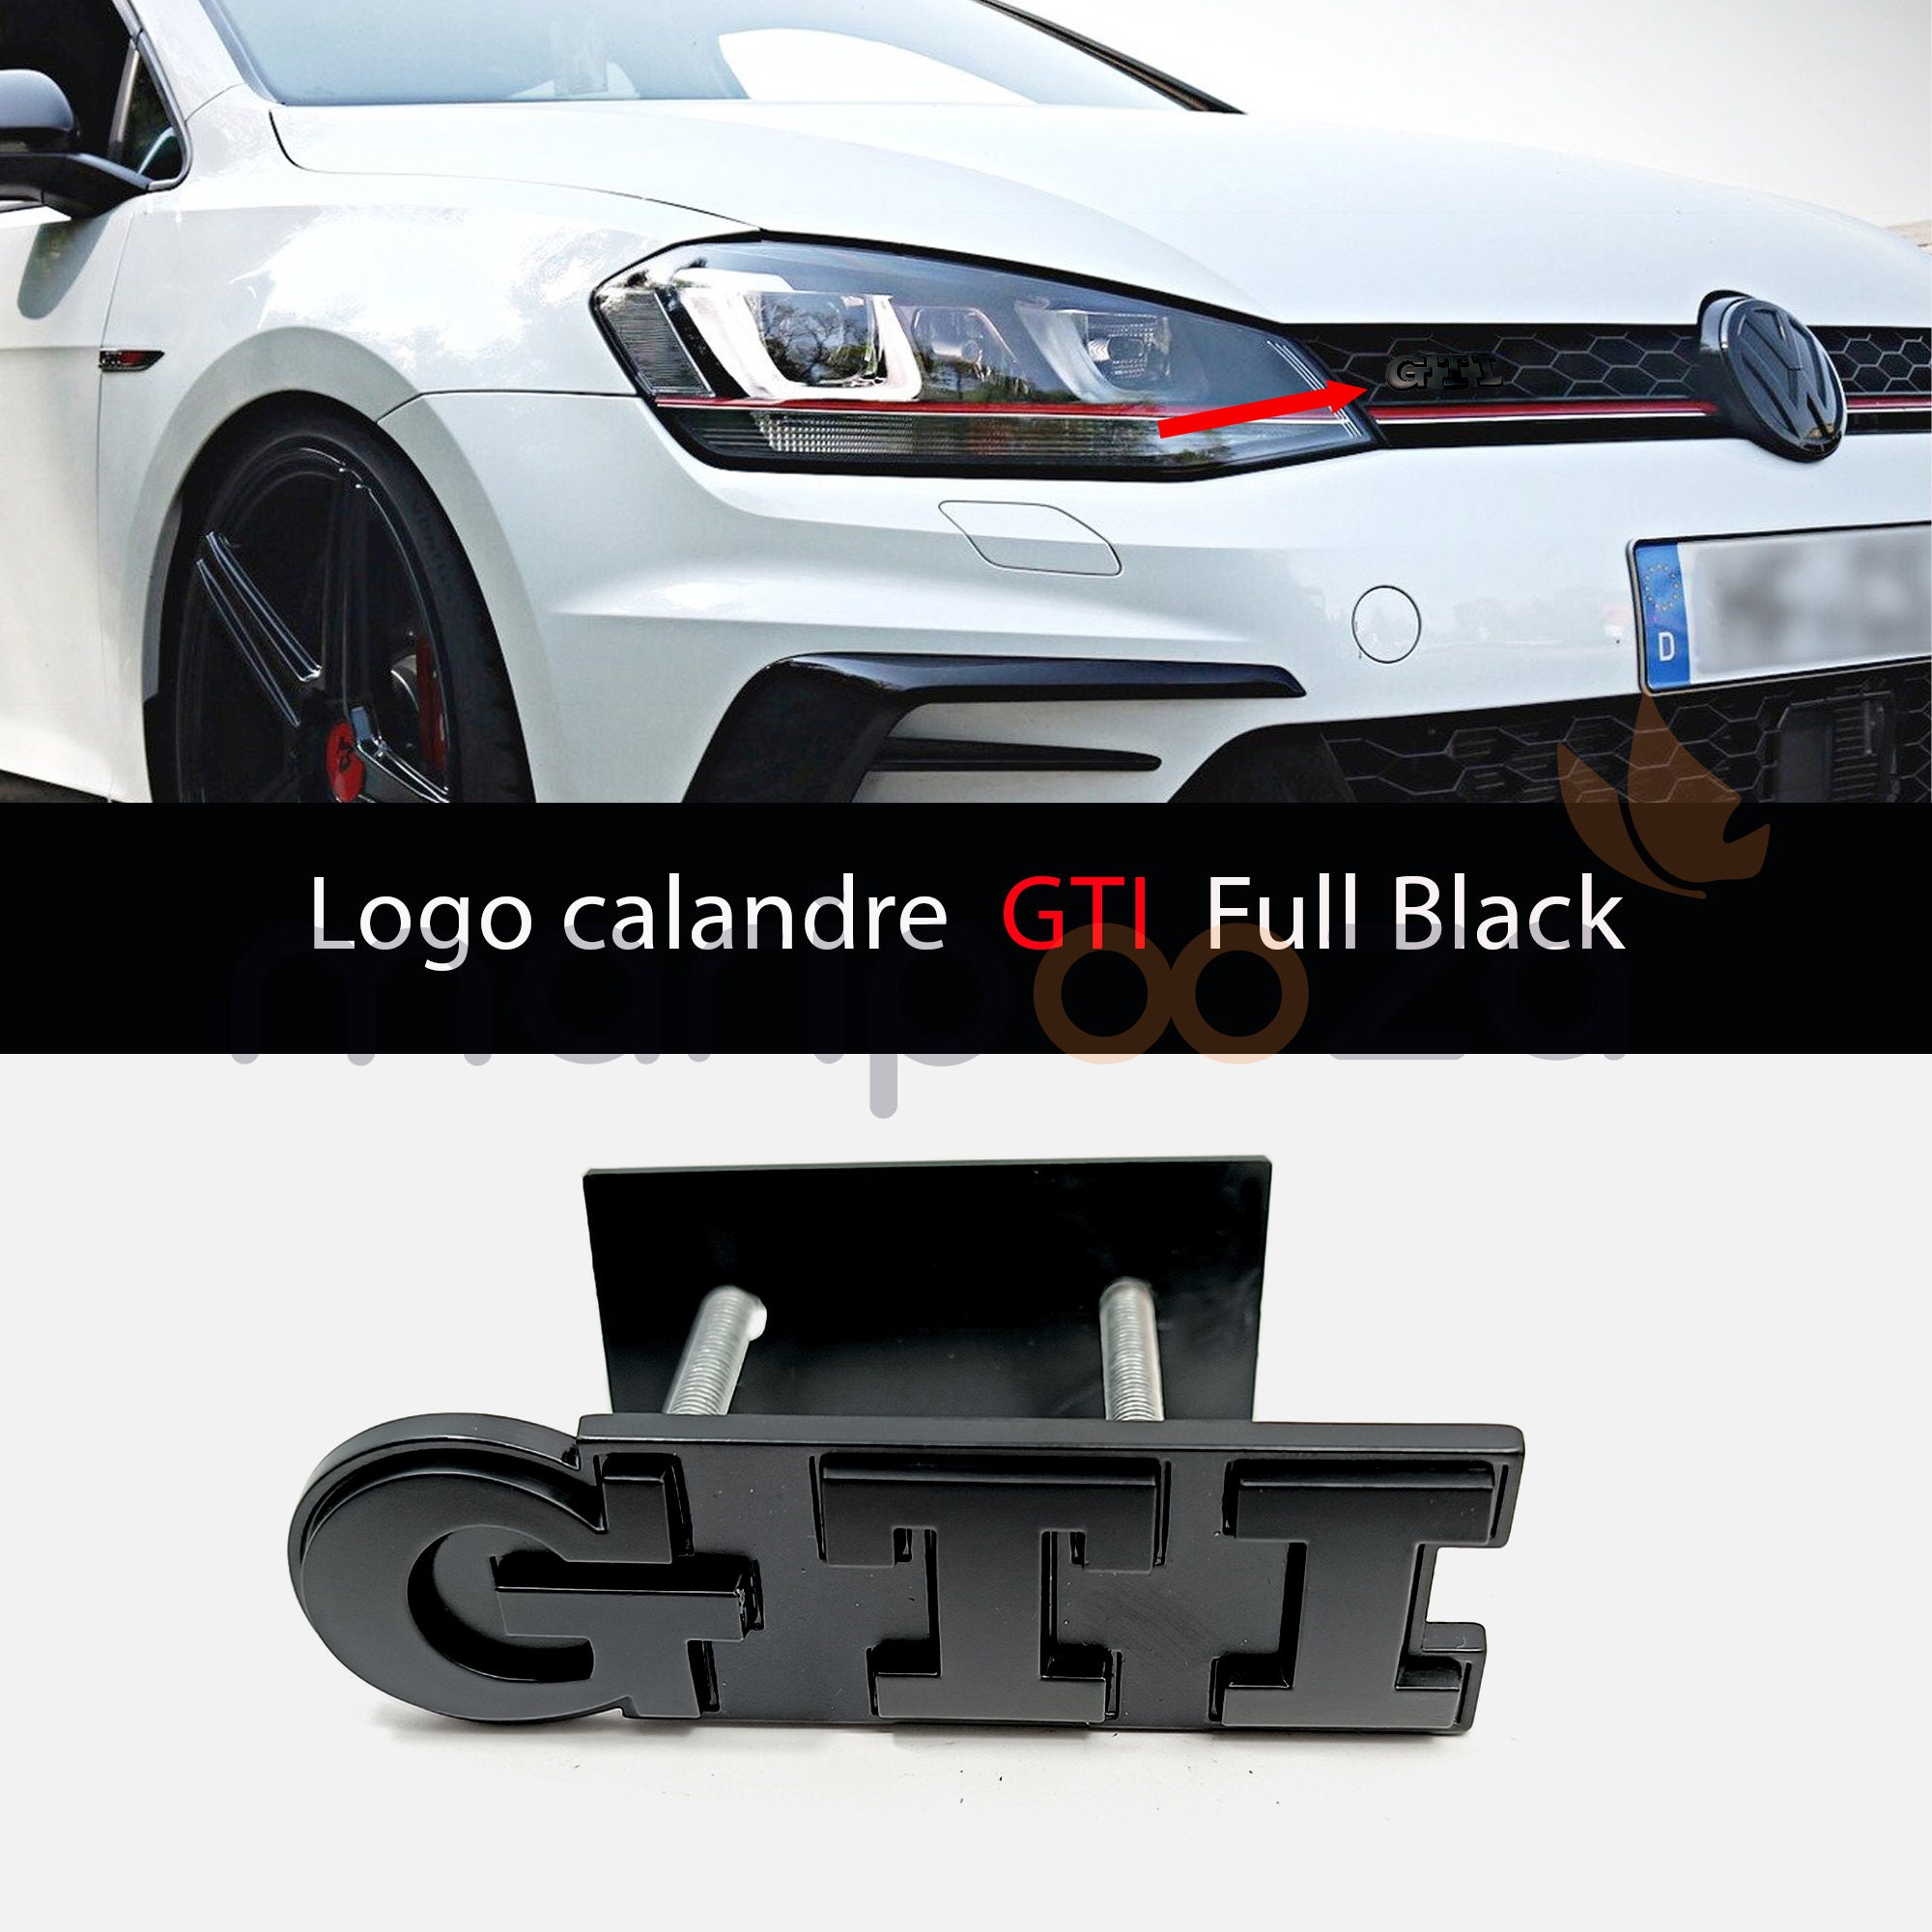 Accessoires origine Volkswagen - Caches moyeu dynamique GTI